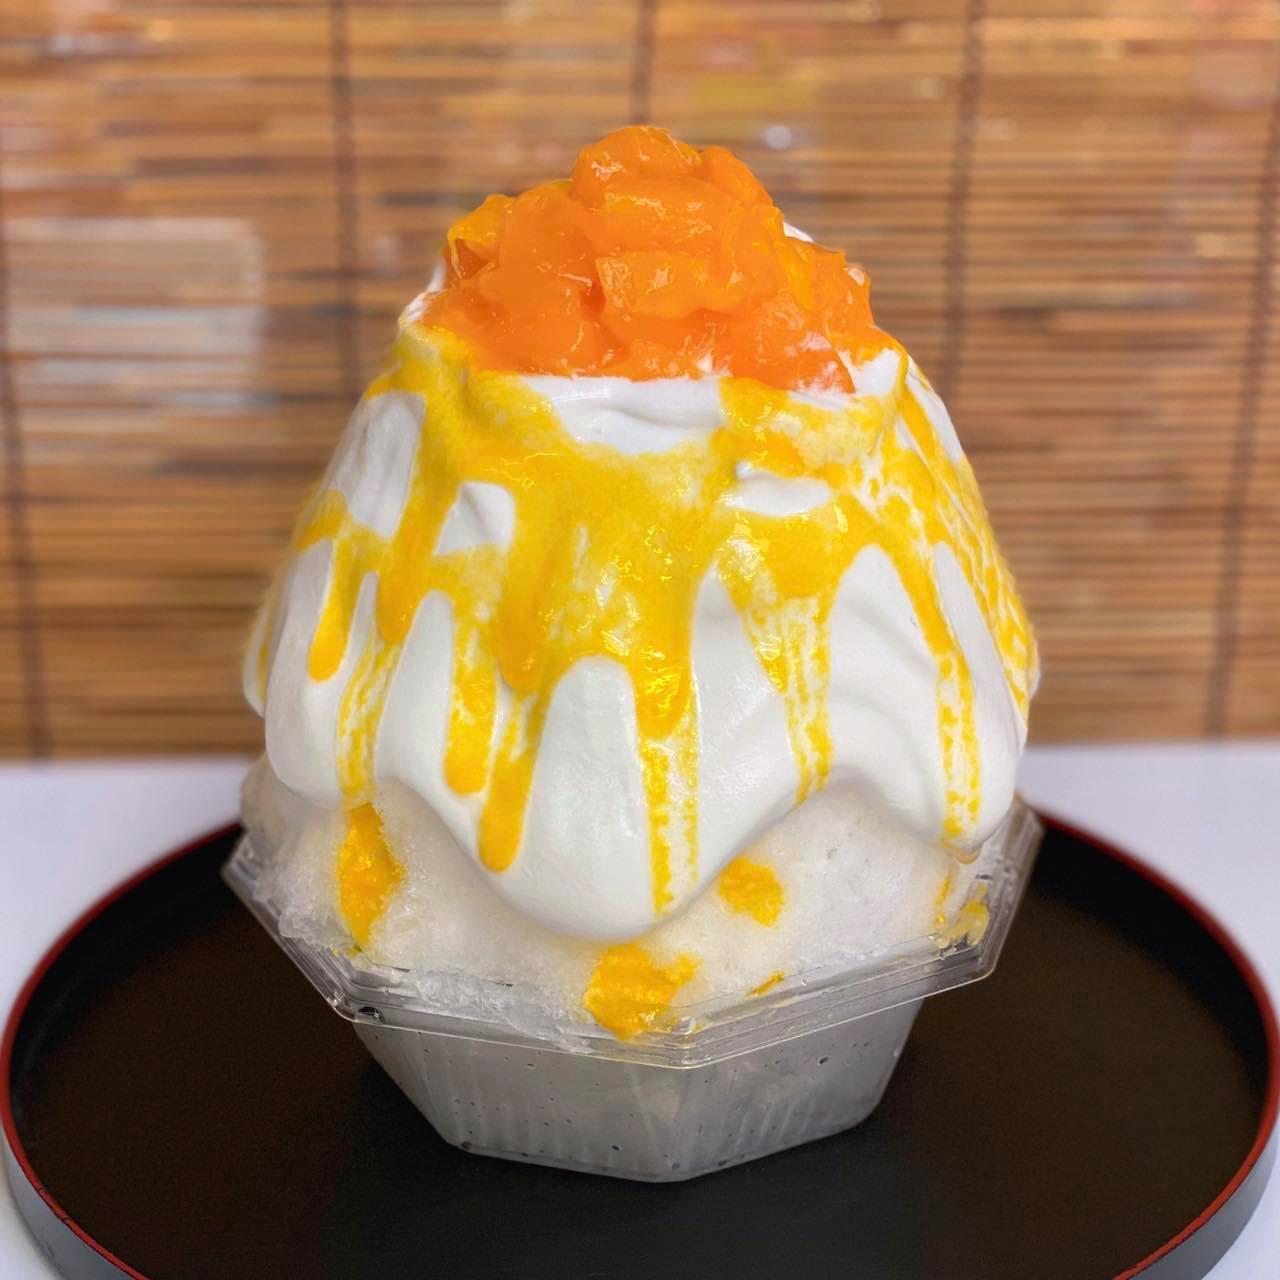 『生マンゴーヨーグルト』宮崎産完熟マンゴーのとろける甘さと、クリーミーに仕上げた微かな酸味のヨーグルトのマッチングは最高です。これぞ生マンゴーかき氷。